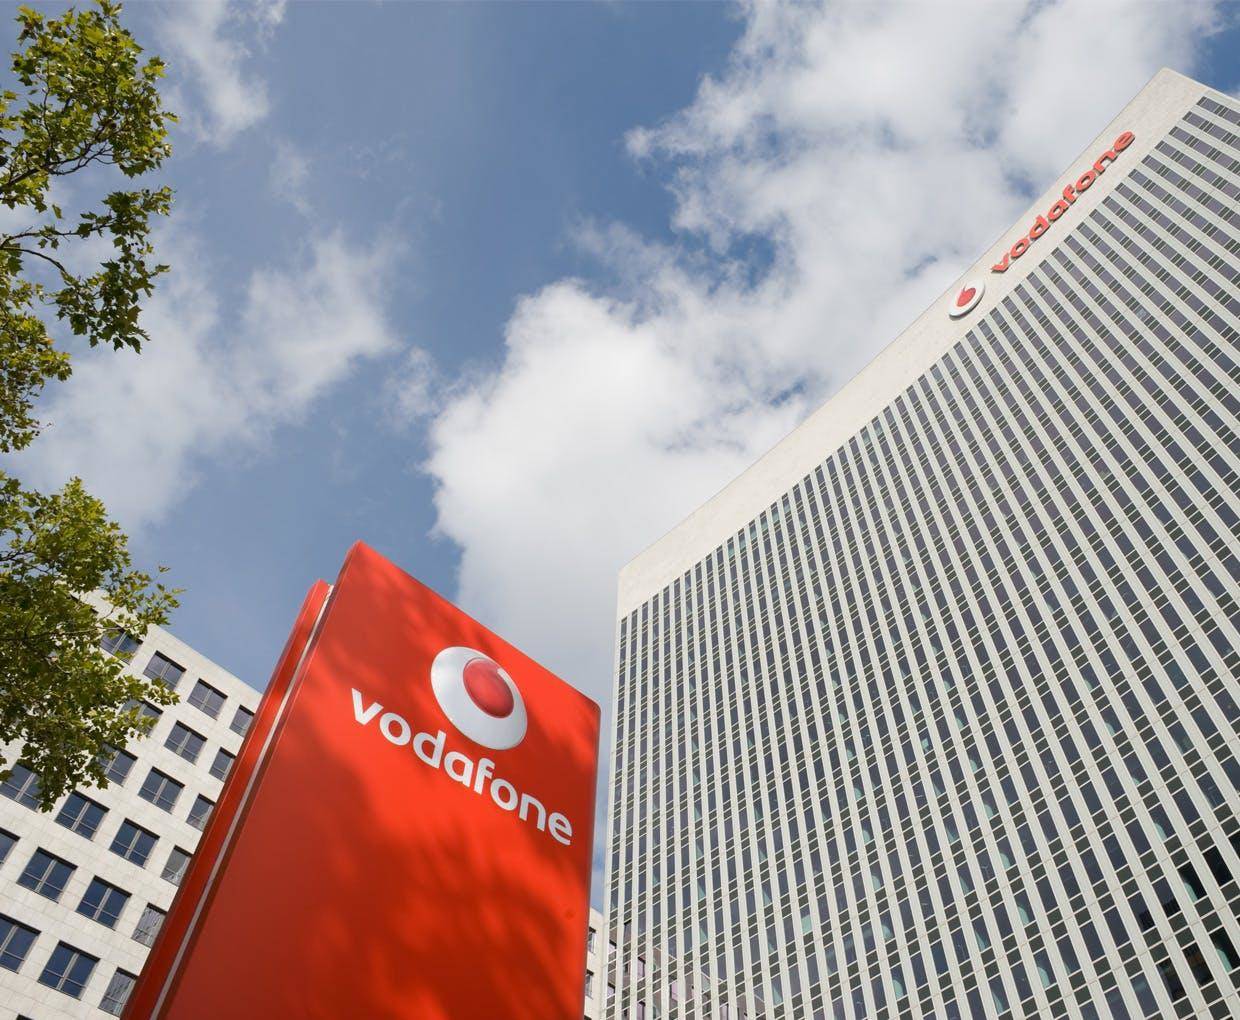 Vodafone ने जारी कीया नया प्लान,28 दिनों तक रोज मिलेगा 2GB 4G डाटा